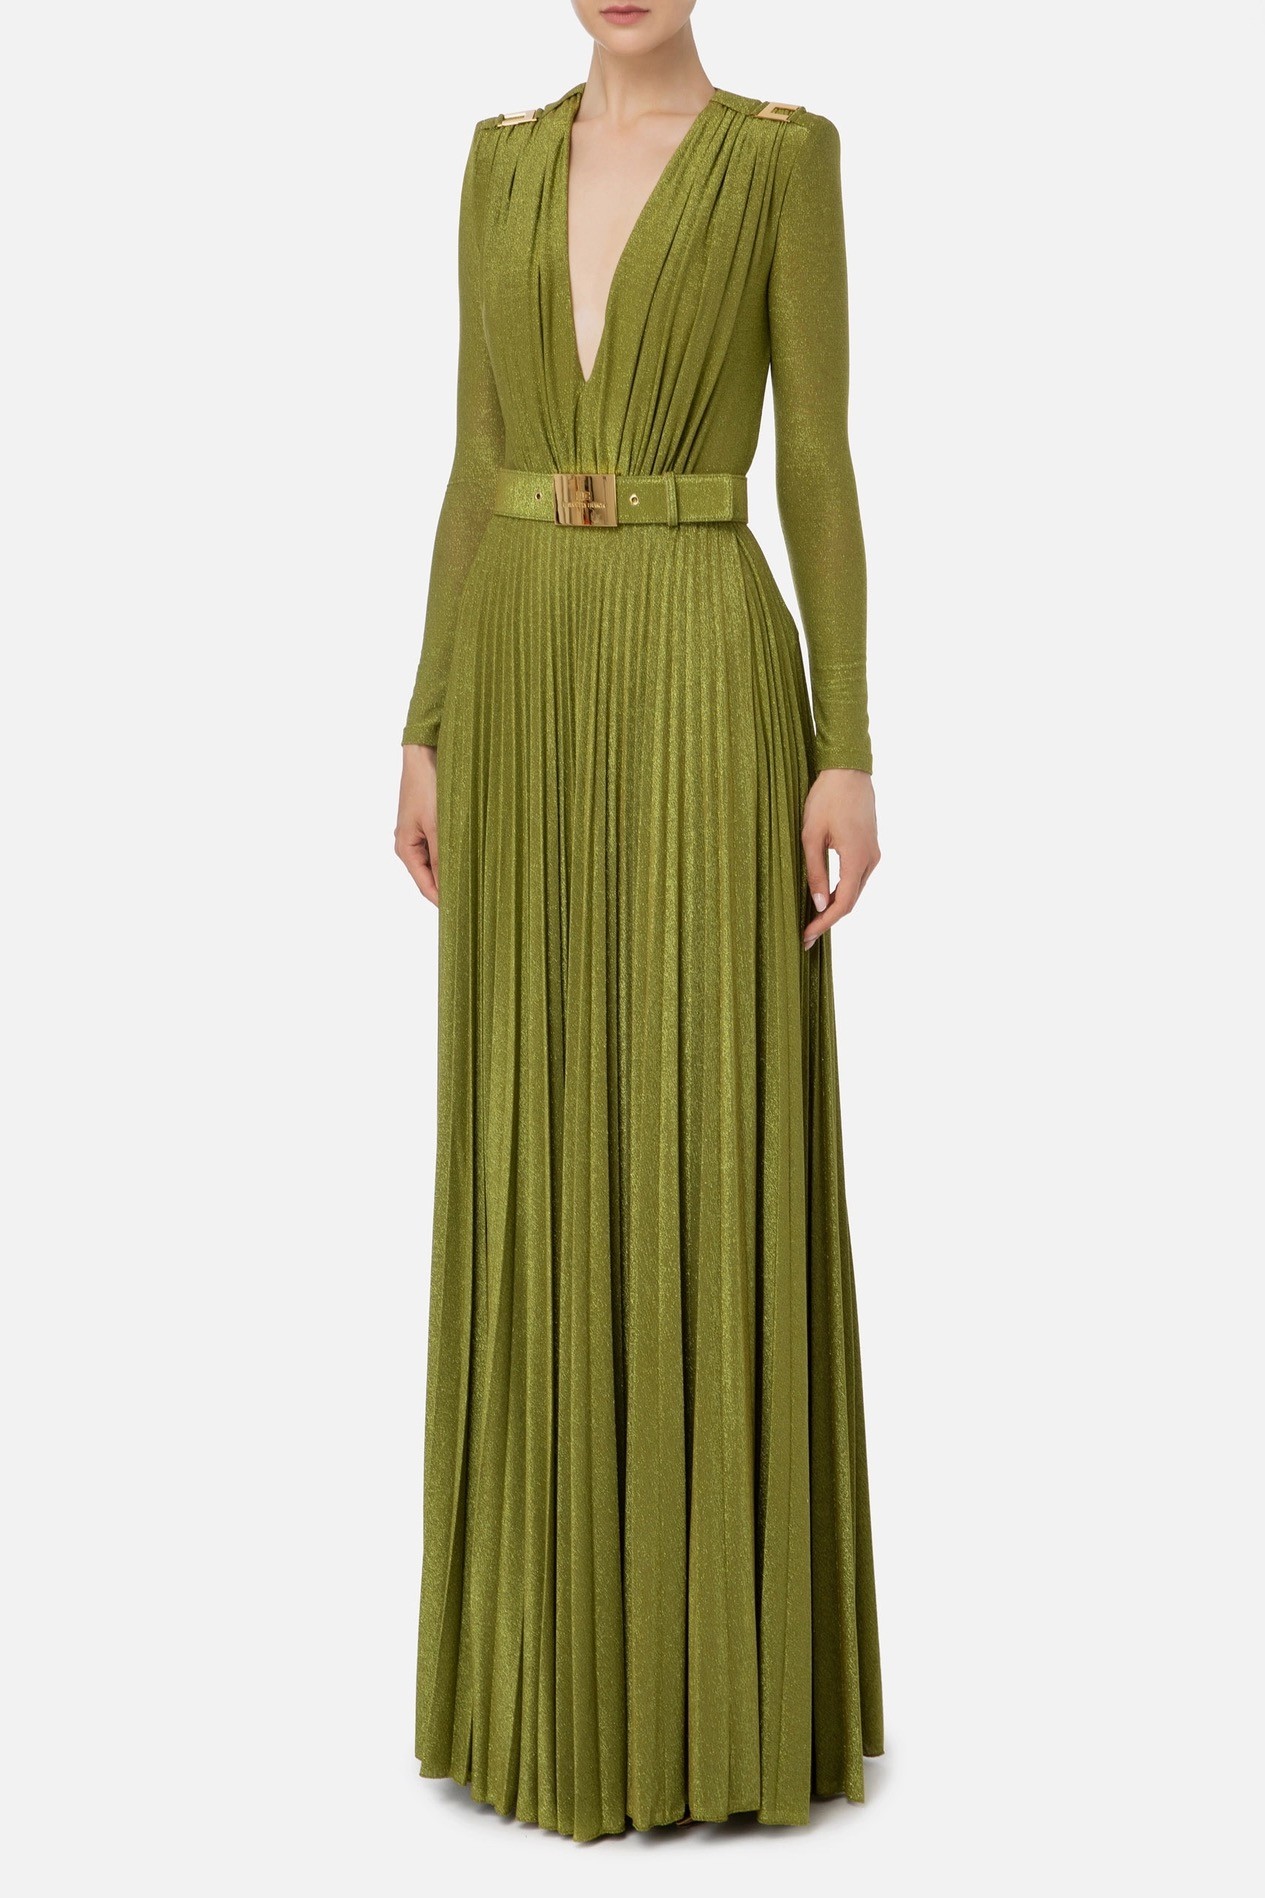 Elisabetta Franchi - Red Carpet Lurex Jersey Dress - Olive oil 